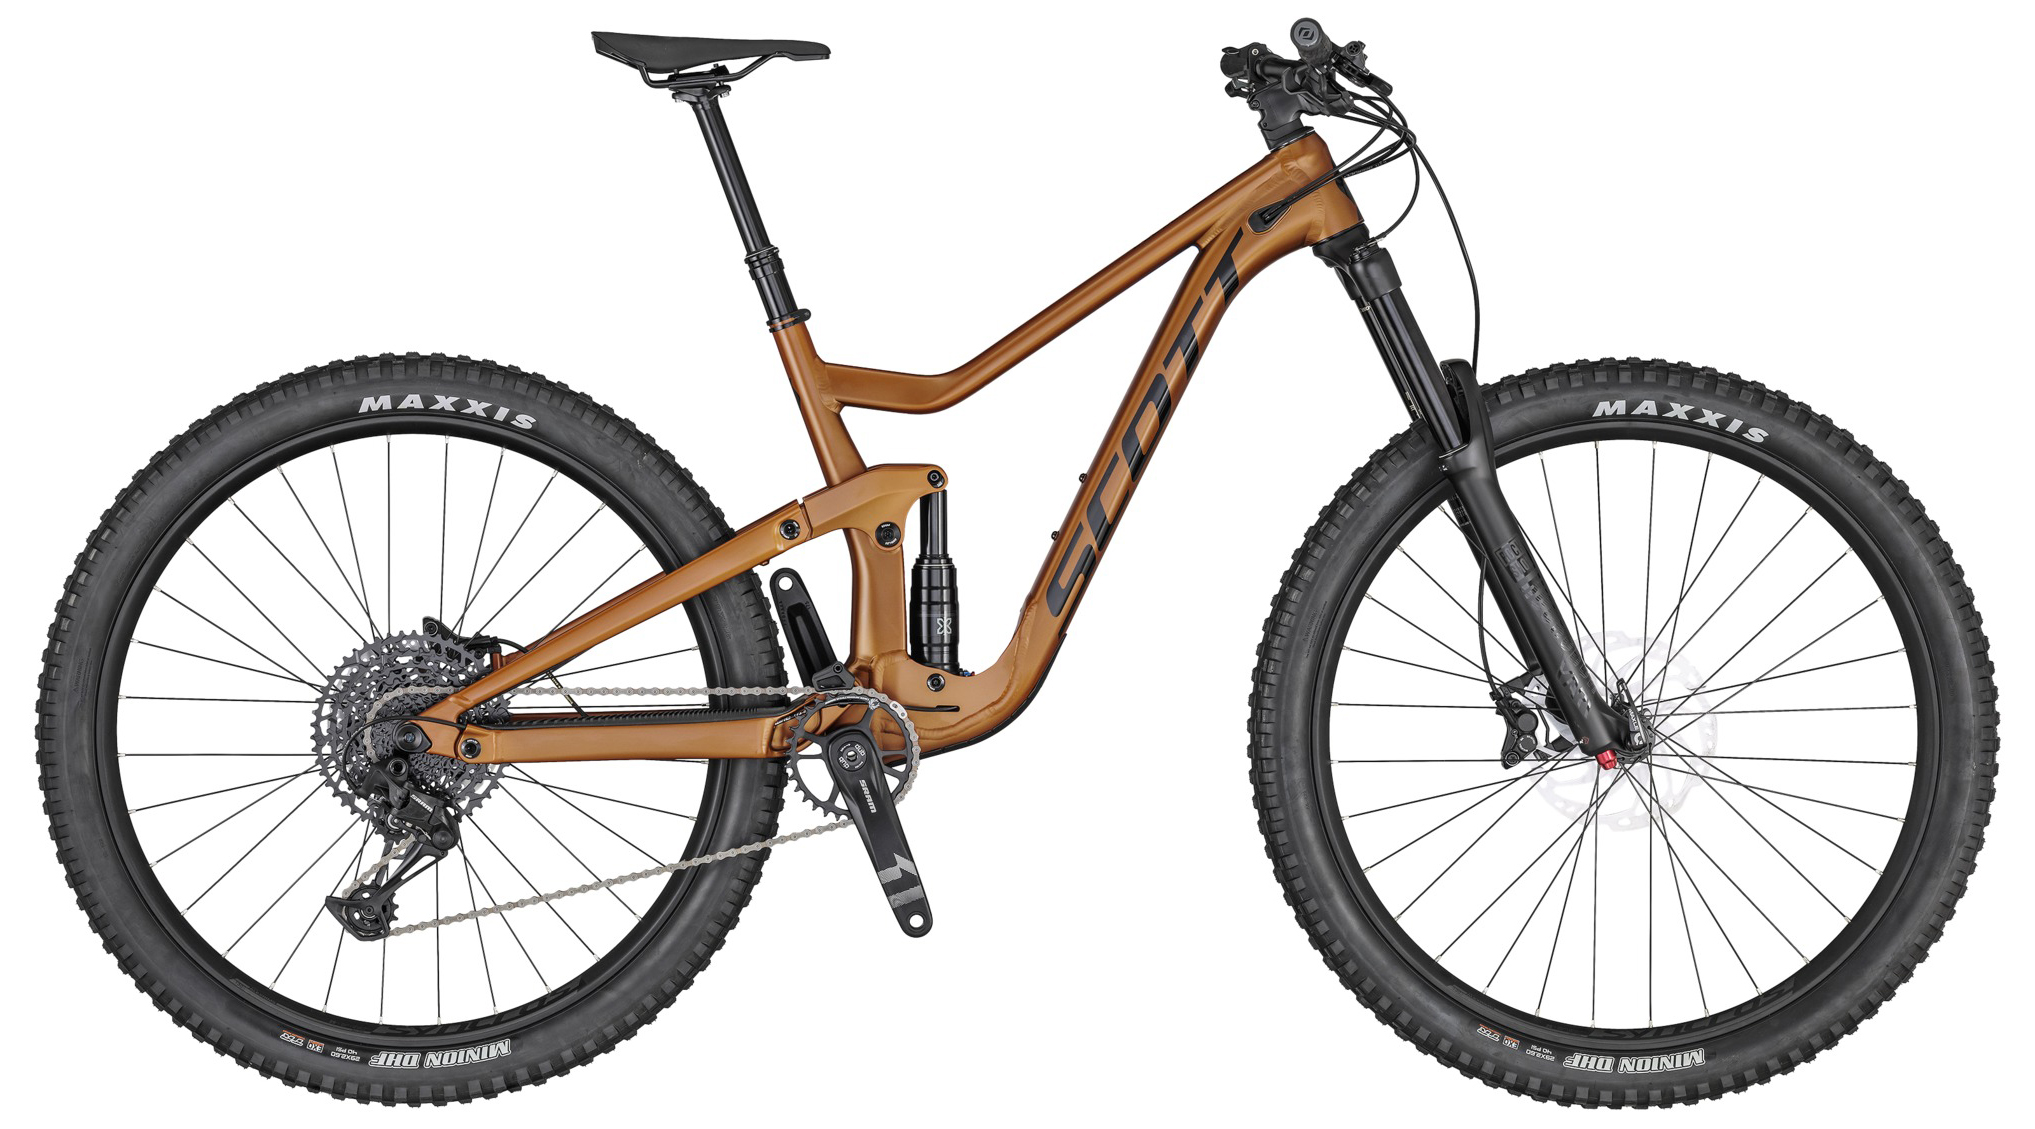  Отзывы о Двухподвесном велосипеде Scott Ransom 930 2020